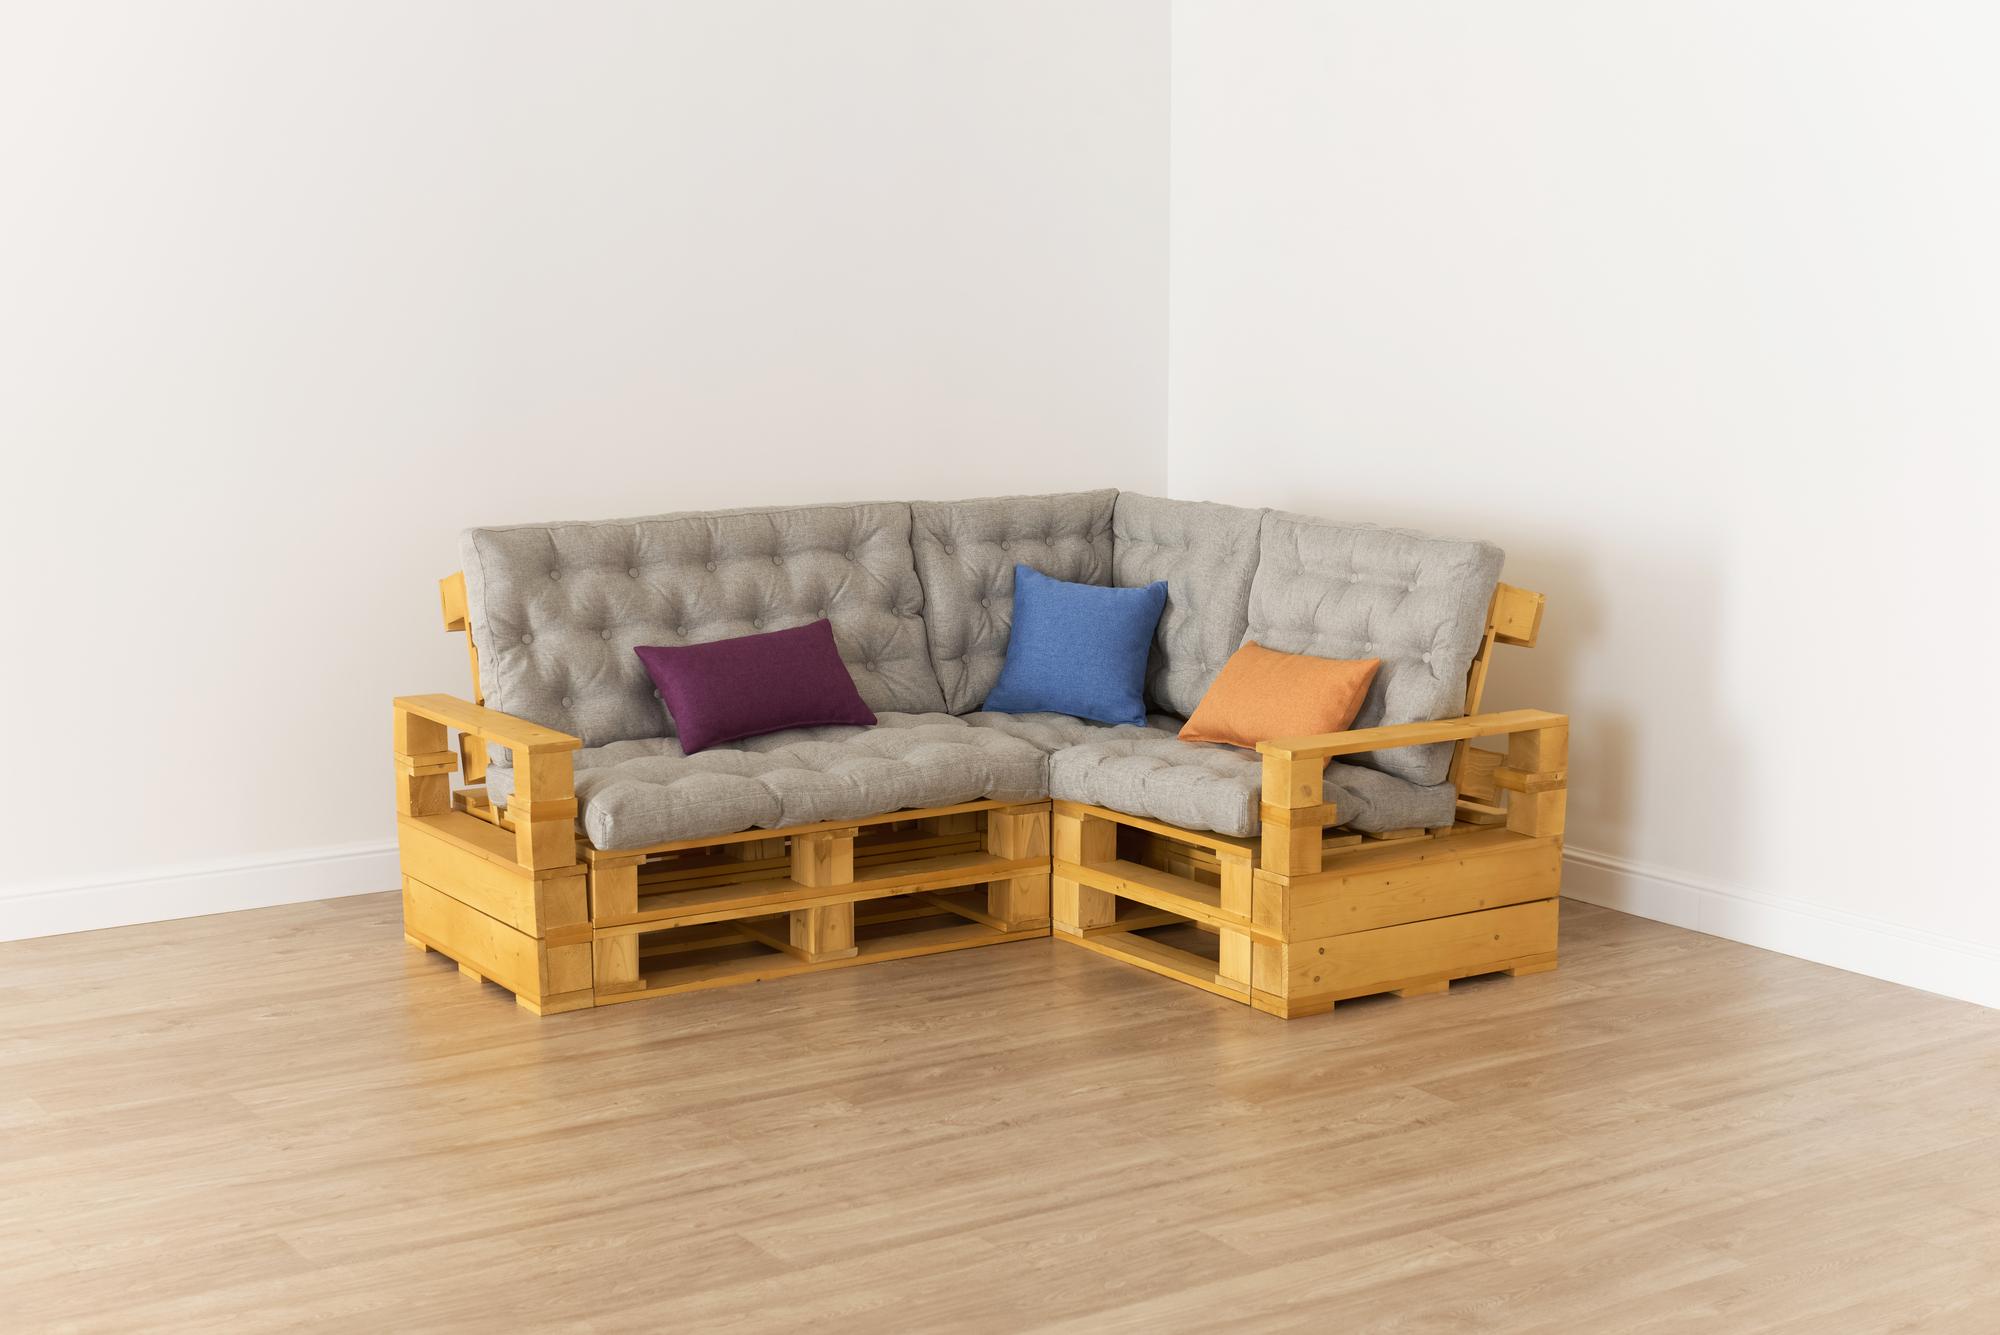 Купить Подлокотник + Диван 70 + угловой диван + диван 110 + подлокотник от производителя “Архитектория” 